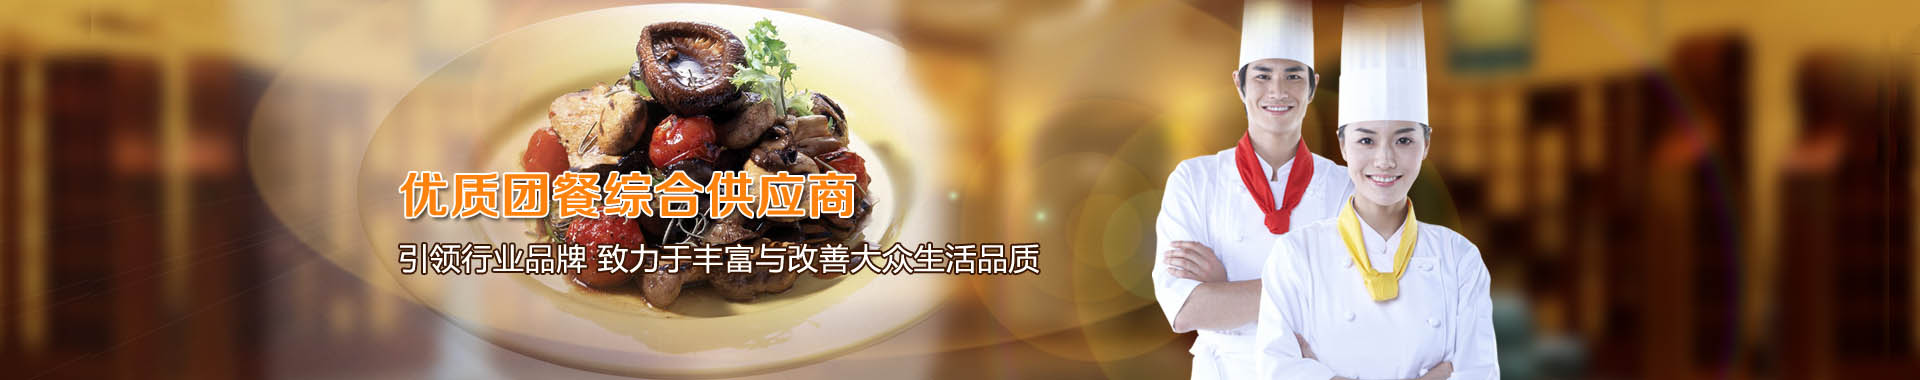 食堂承包-员工饭堂承包-广州食堂托管公司 - 八月八餐饮